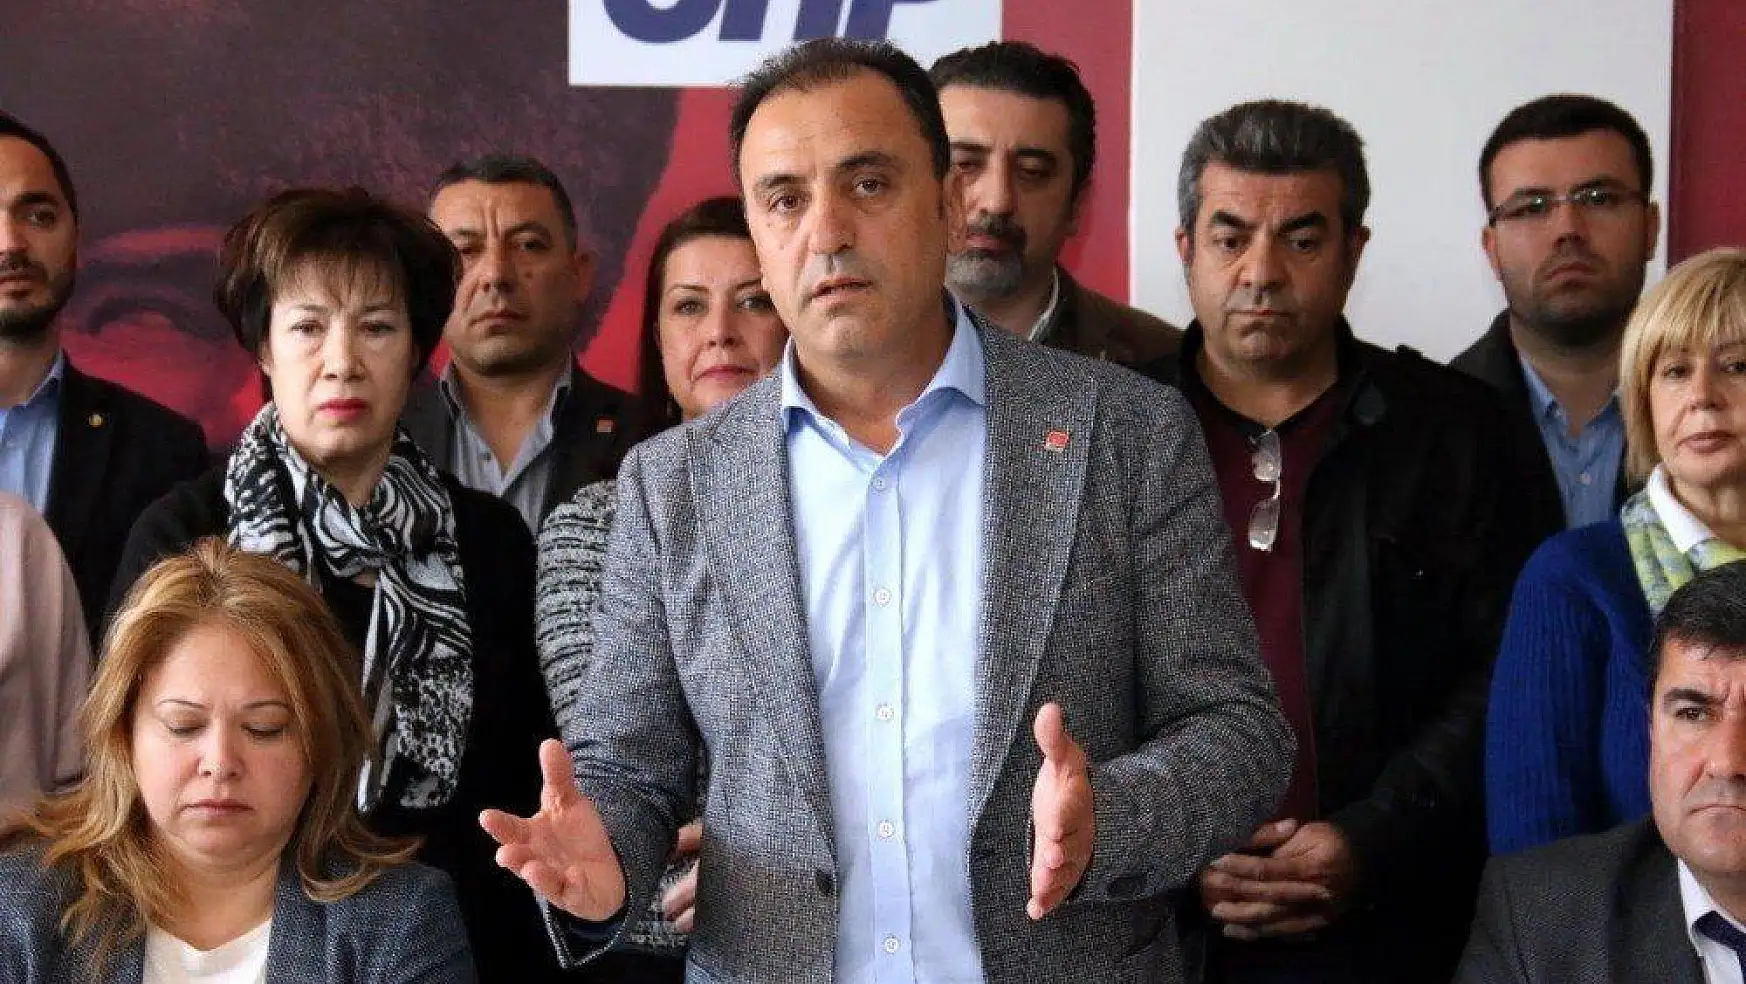 Başkan adaylığı düşürülen CHP'li Saruhan: 'Davamızın peşinde sonuna kadar mücadele edeceğiz'